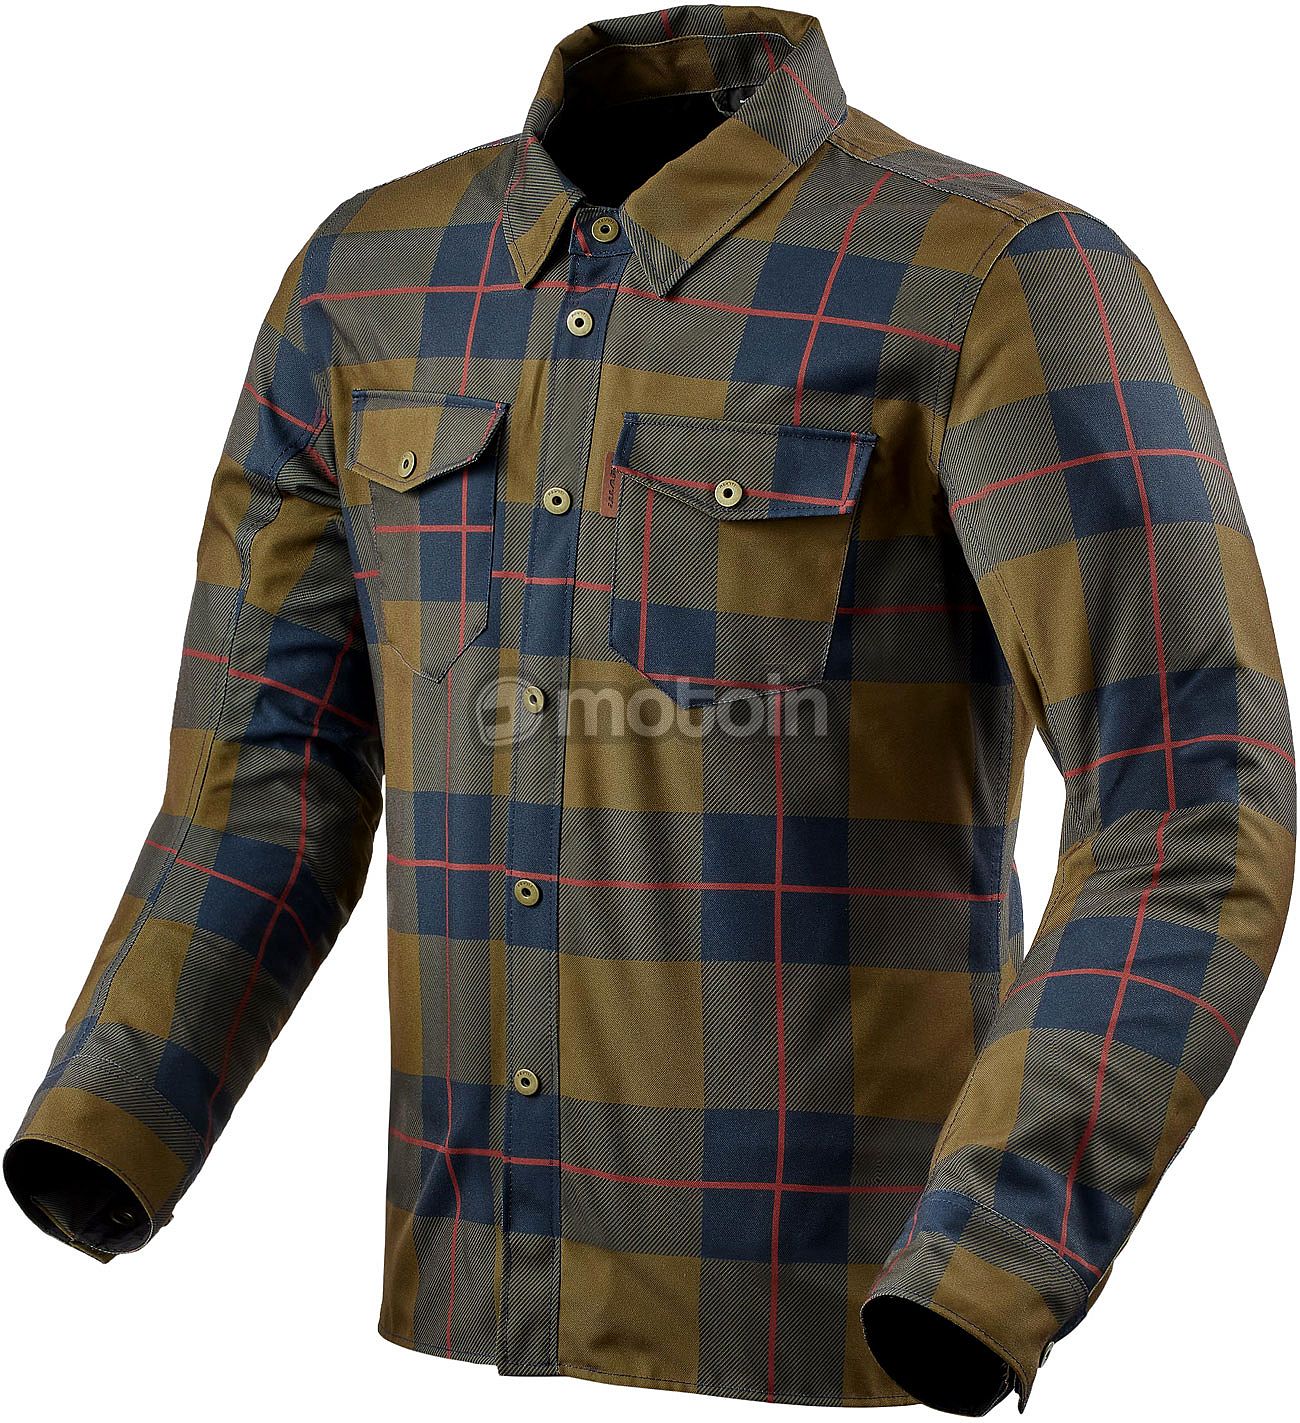 Revit Bison 2 H2O, chemise/textile veste imperméable